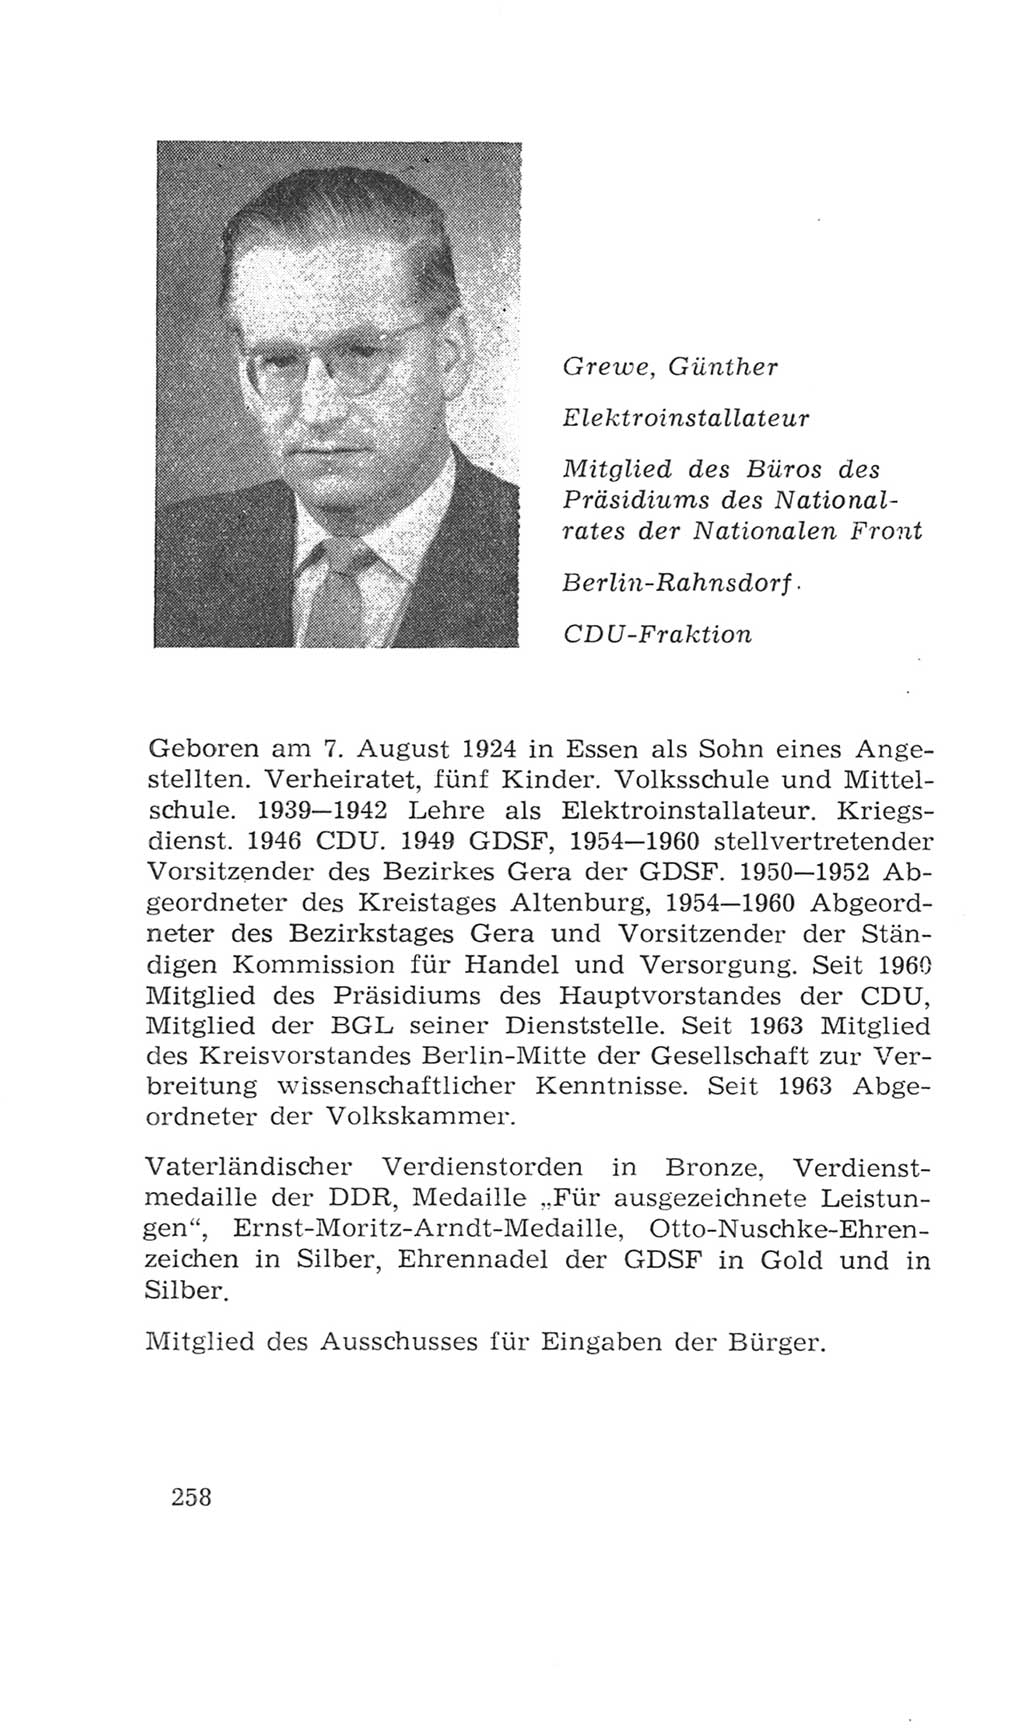 Volkskammer (VK) der Deutschen Demokratischen Republik (DDR), 4. Wahlperiode 1963-1967, Seite 258 (VK. DDR 4. WP. 1963-1967, S. 258)